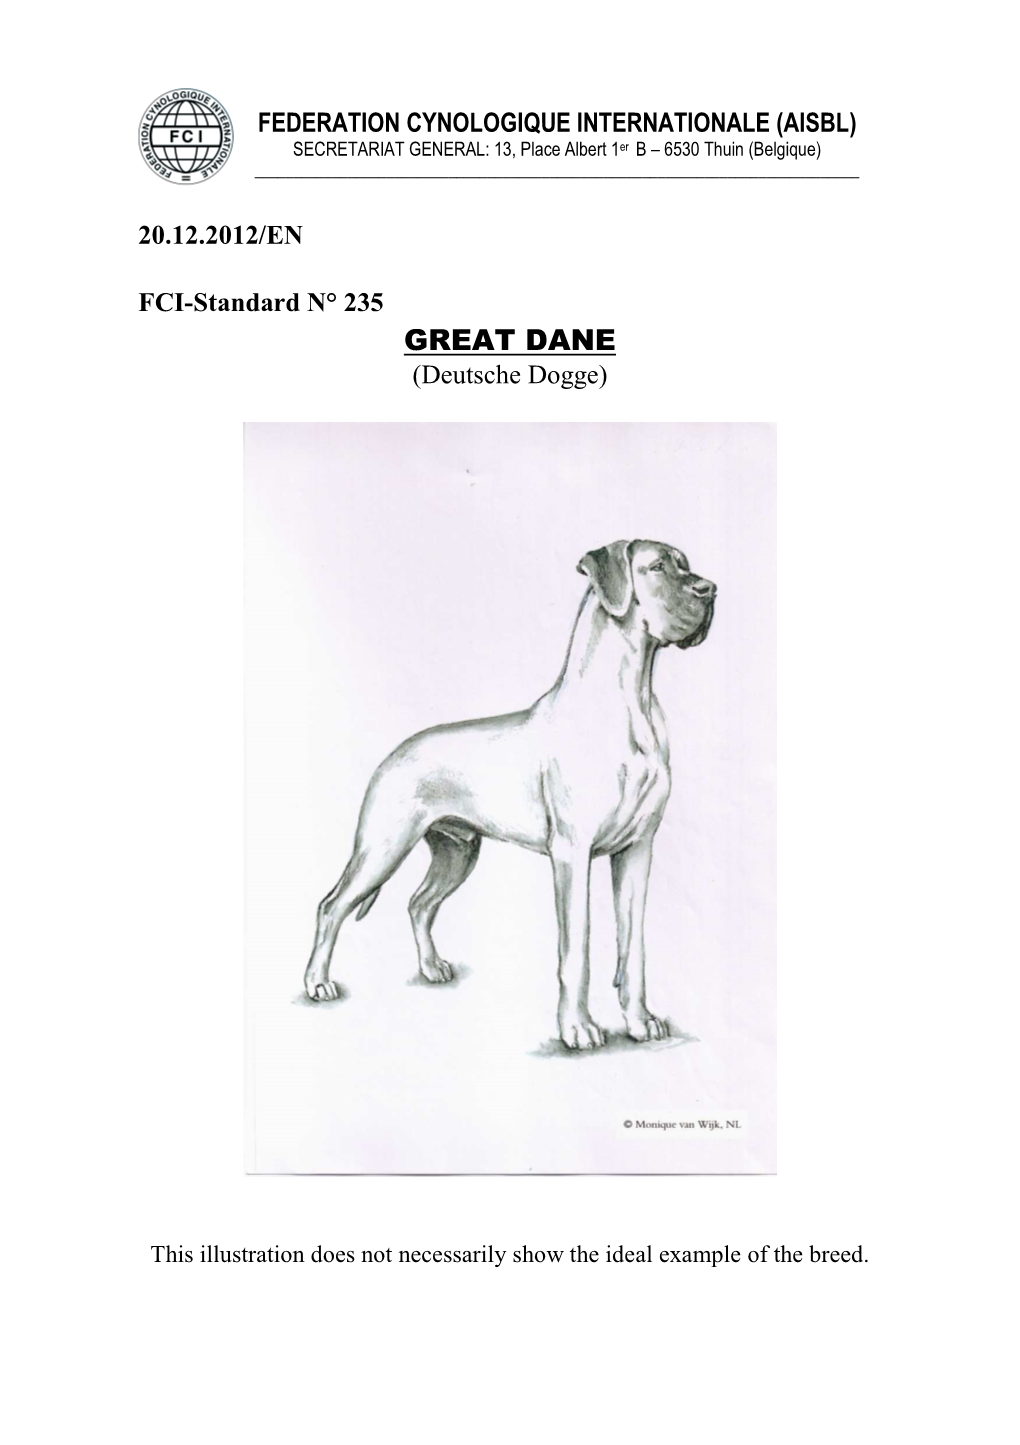 GREAT DANE (Deutsche Dogge)